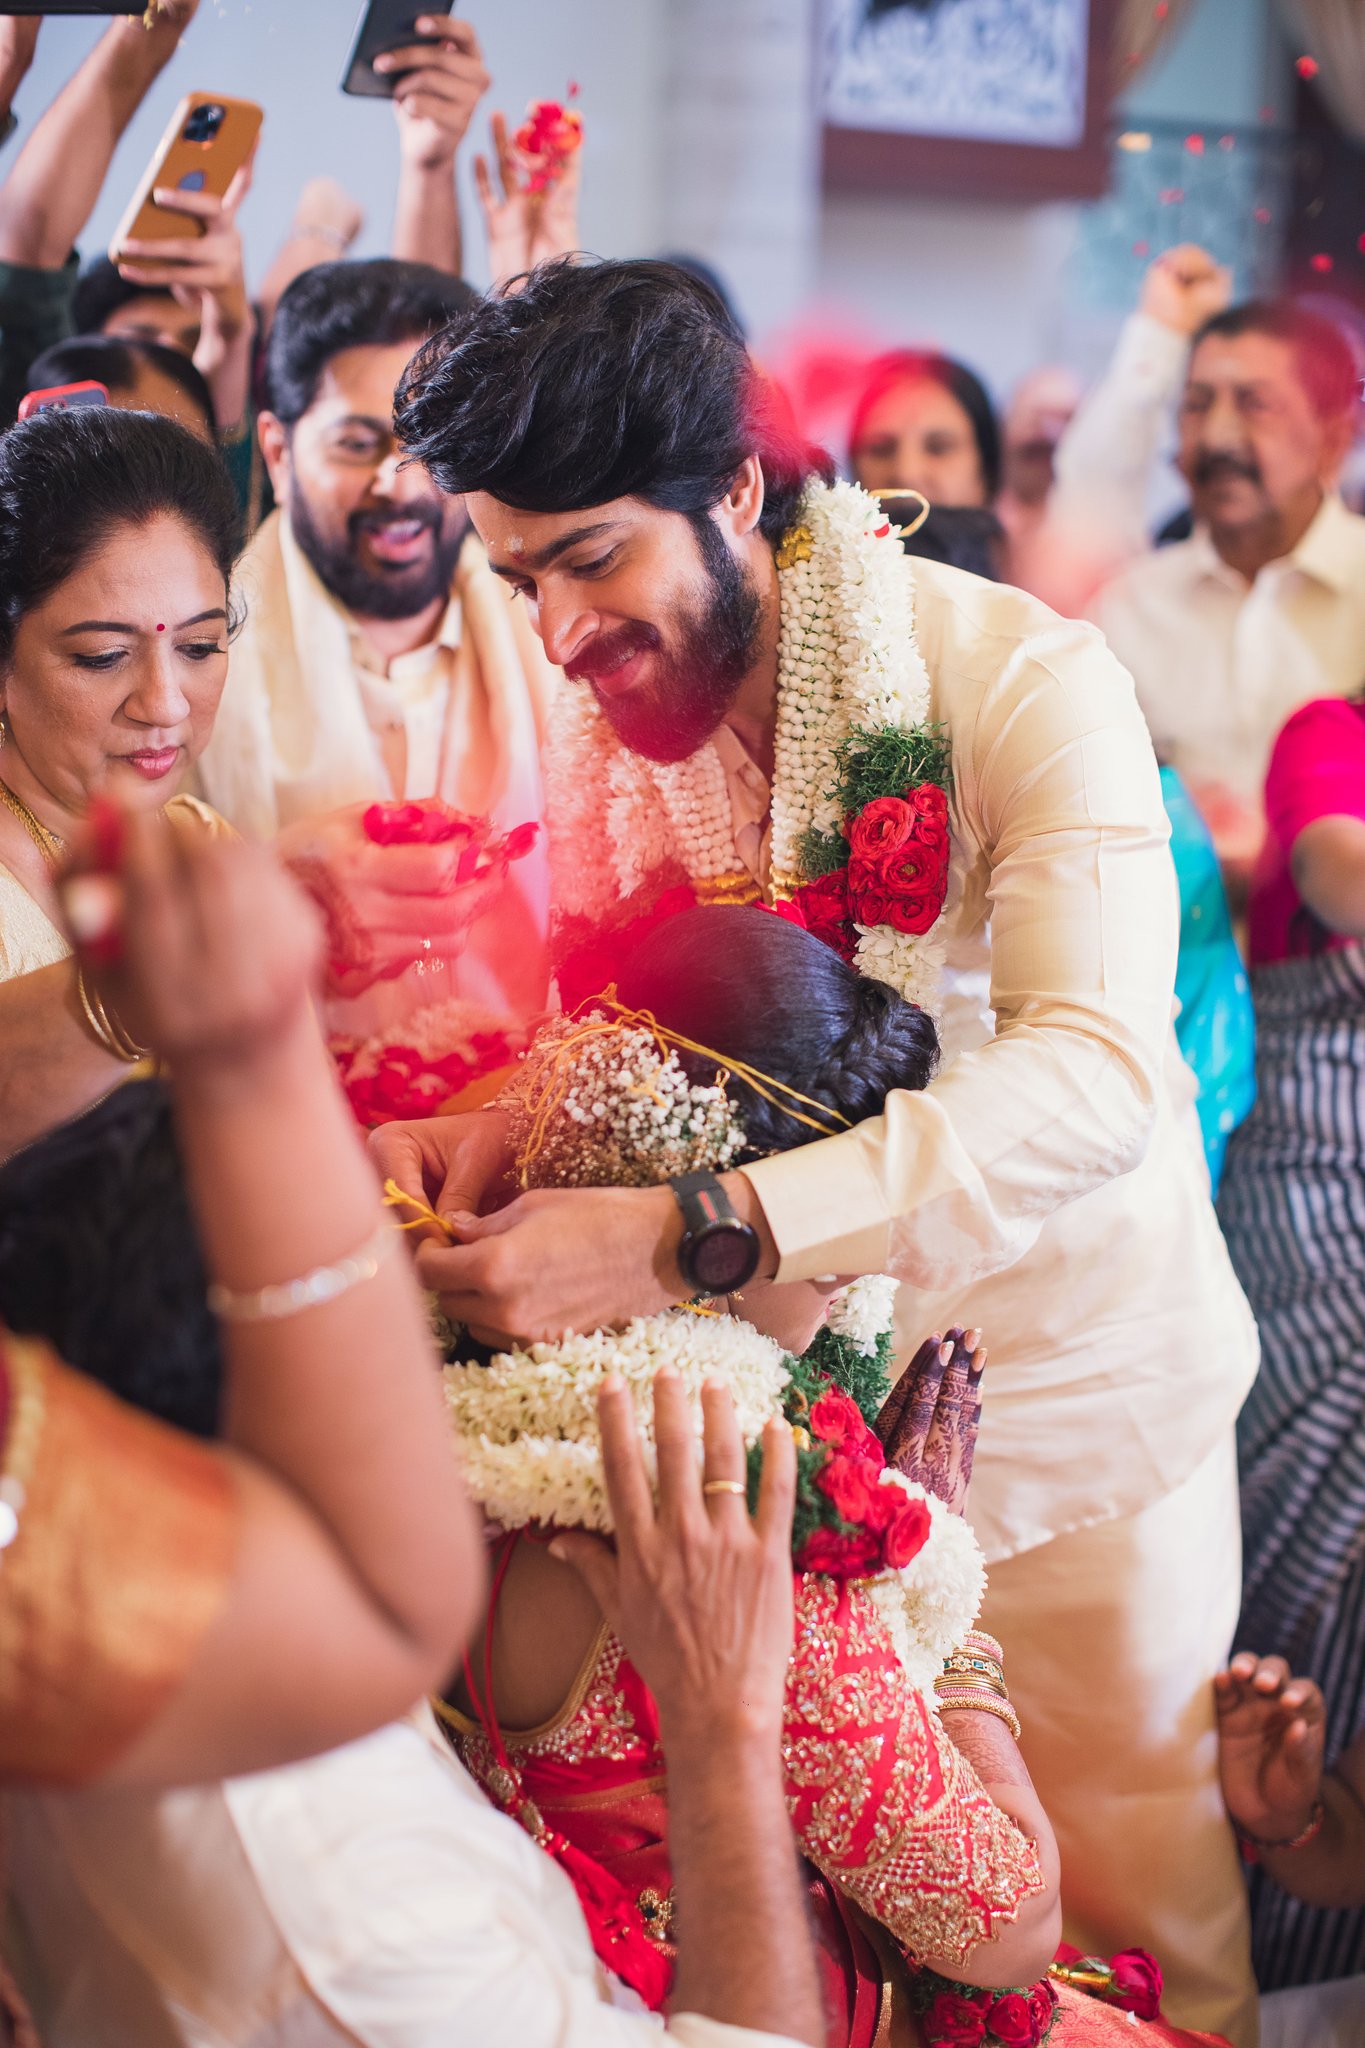 harish kalyan wedding pictures getting viral on social media